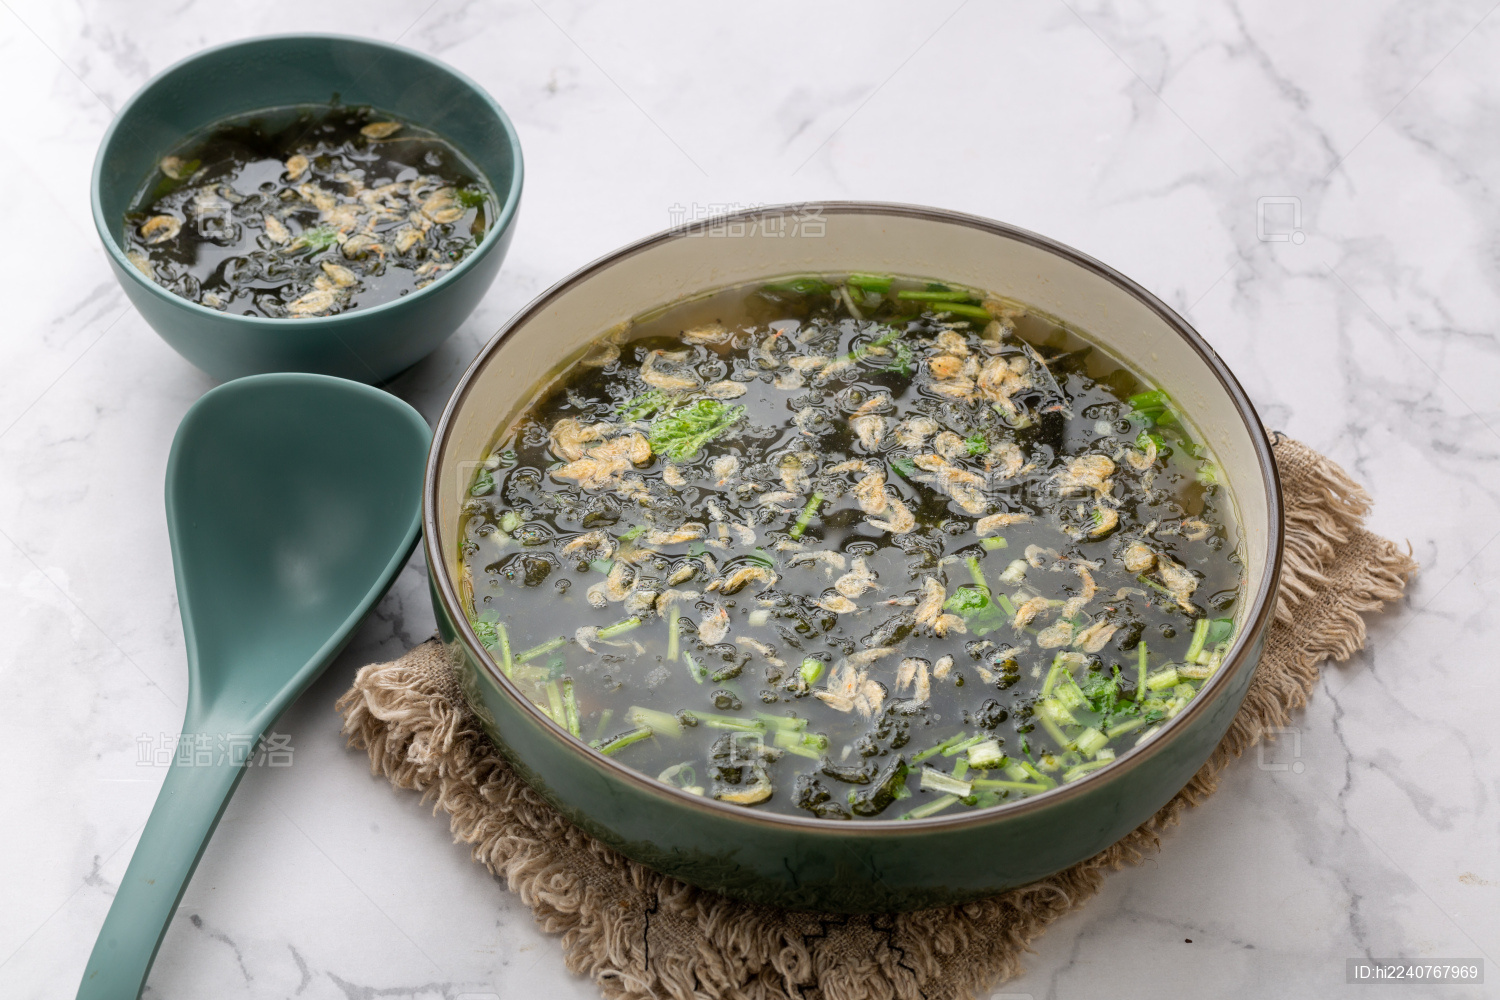 鲜虾菌菇汤,鲜虾菌菇汤的家常做法 - 美食杰鲜虾菌菇汤做法大全